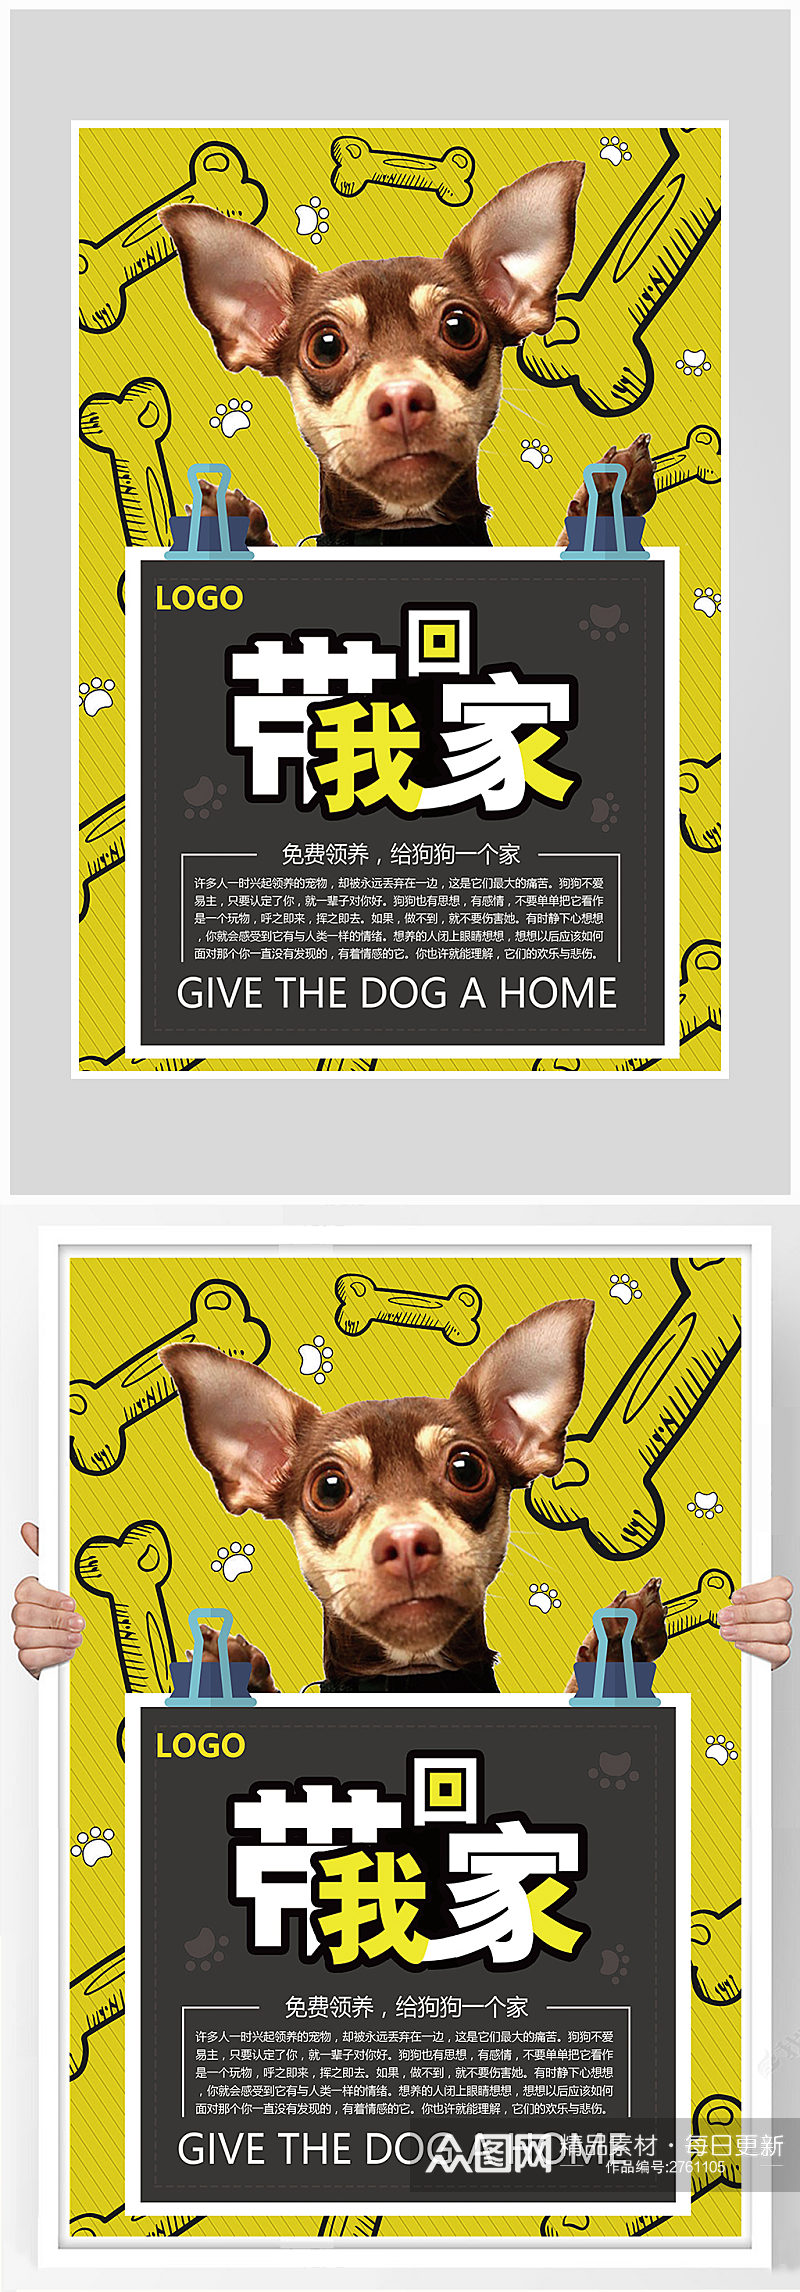 创意萌宠小狗领养促销海报设计素材